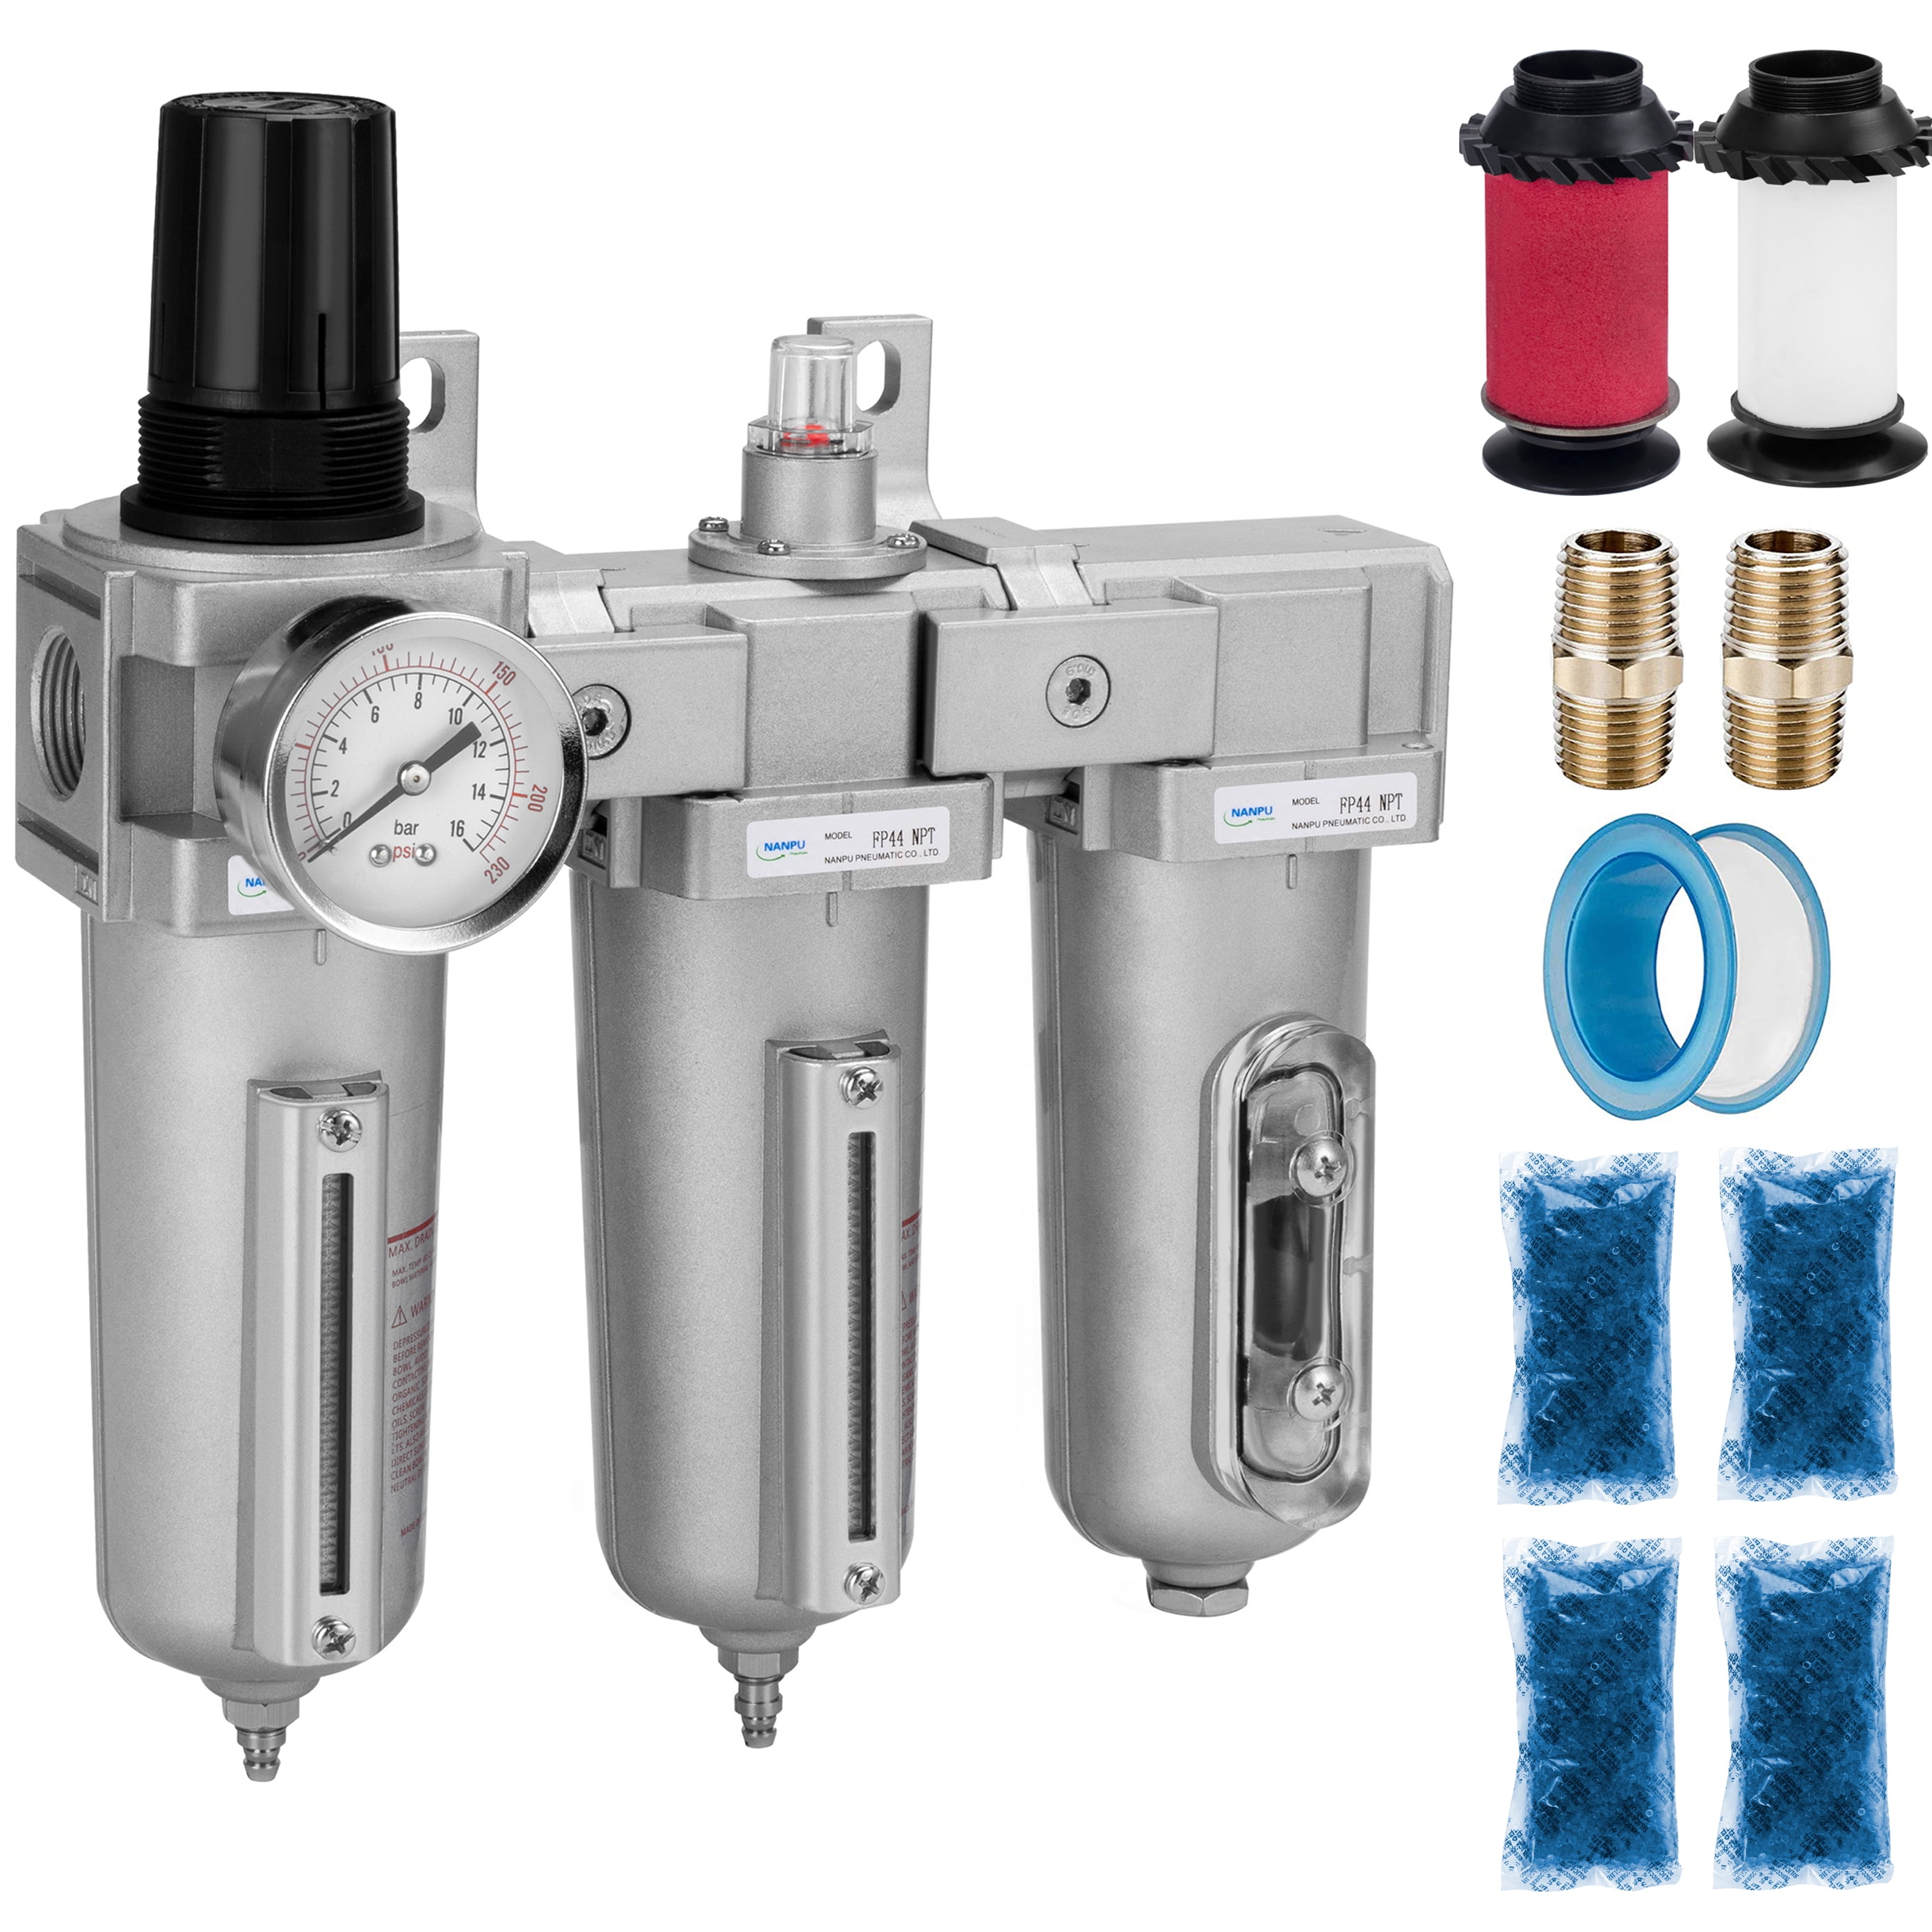 1/2" Compressed Air Filter Regulator/Desiccant Dryer Good For Plasma cutter 